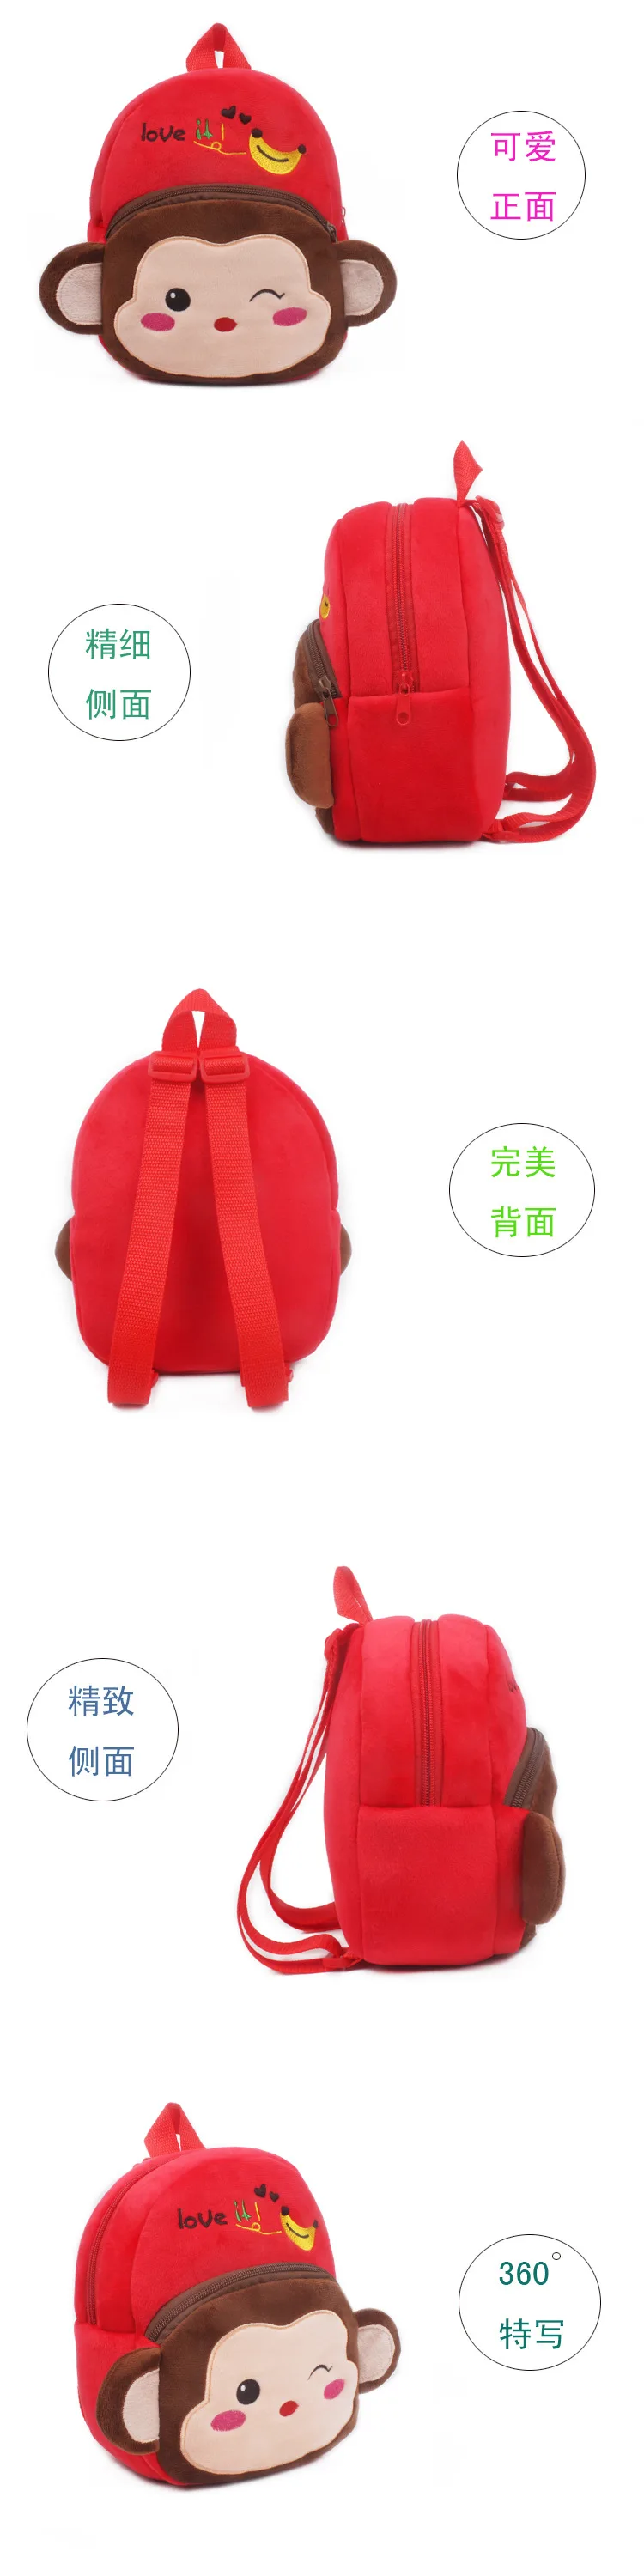 23 см мультяшный плюшевый рюкзак Тоторо Марио, плюшевая сумка, мини школьная сумка, рюкзак с плюшевыми животными, сумка для детского сада, детский подарок